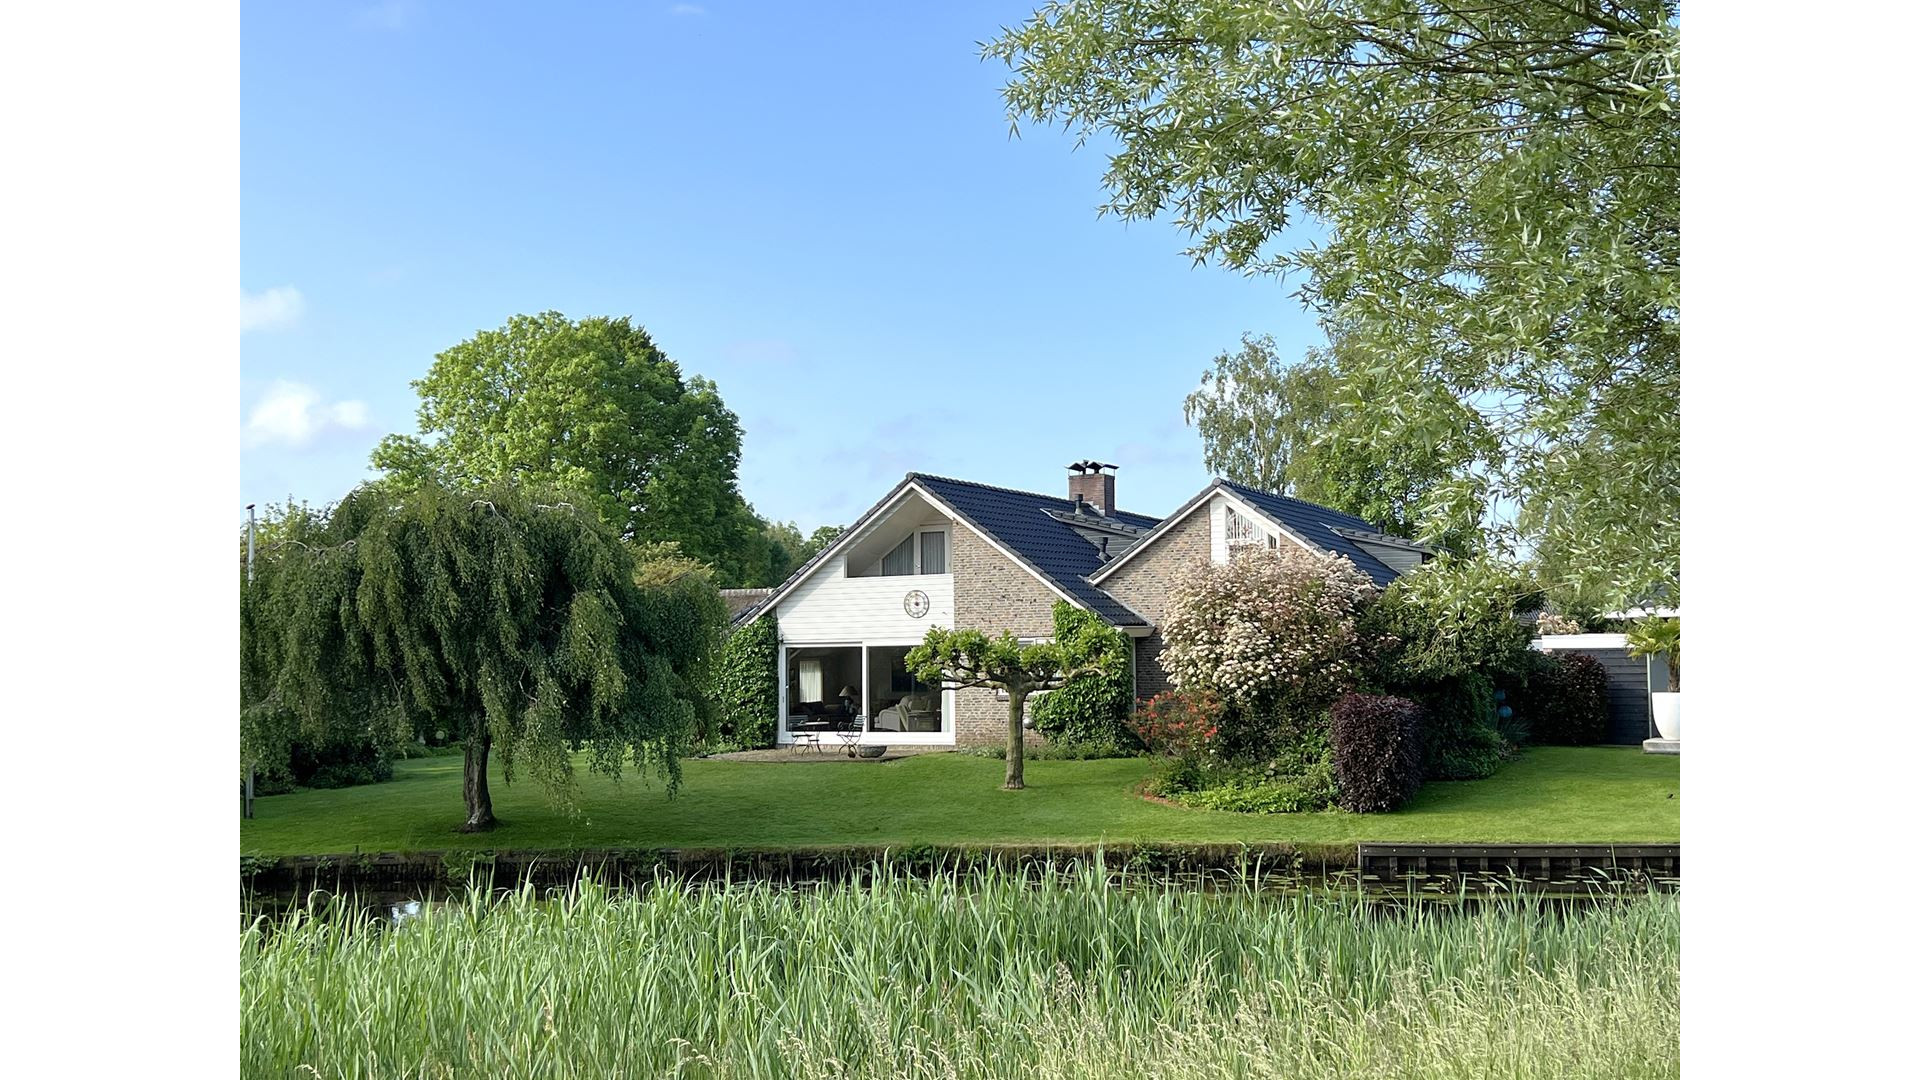 Kijk: Paul de Munnik koopt prachtige vrijstaande villa met bijgebouw. 2